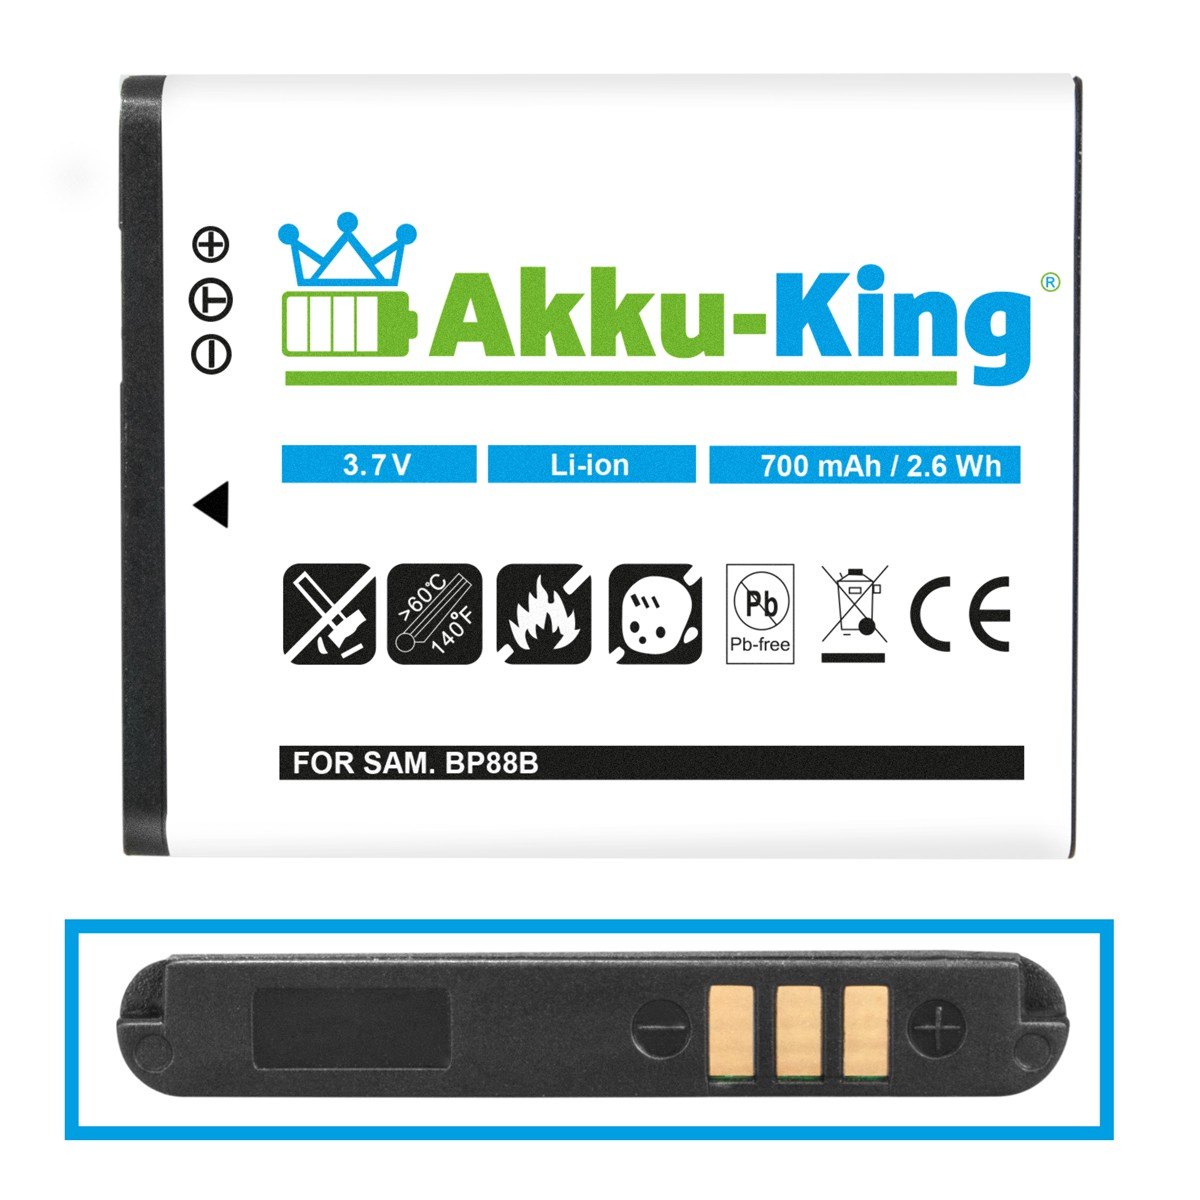 BP-88B AKKU-KING 3.7 Li-Ion Akku Kamera-Akku, 700mAh Volt, Samsung kompatibel mit